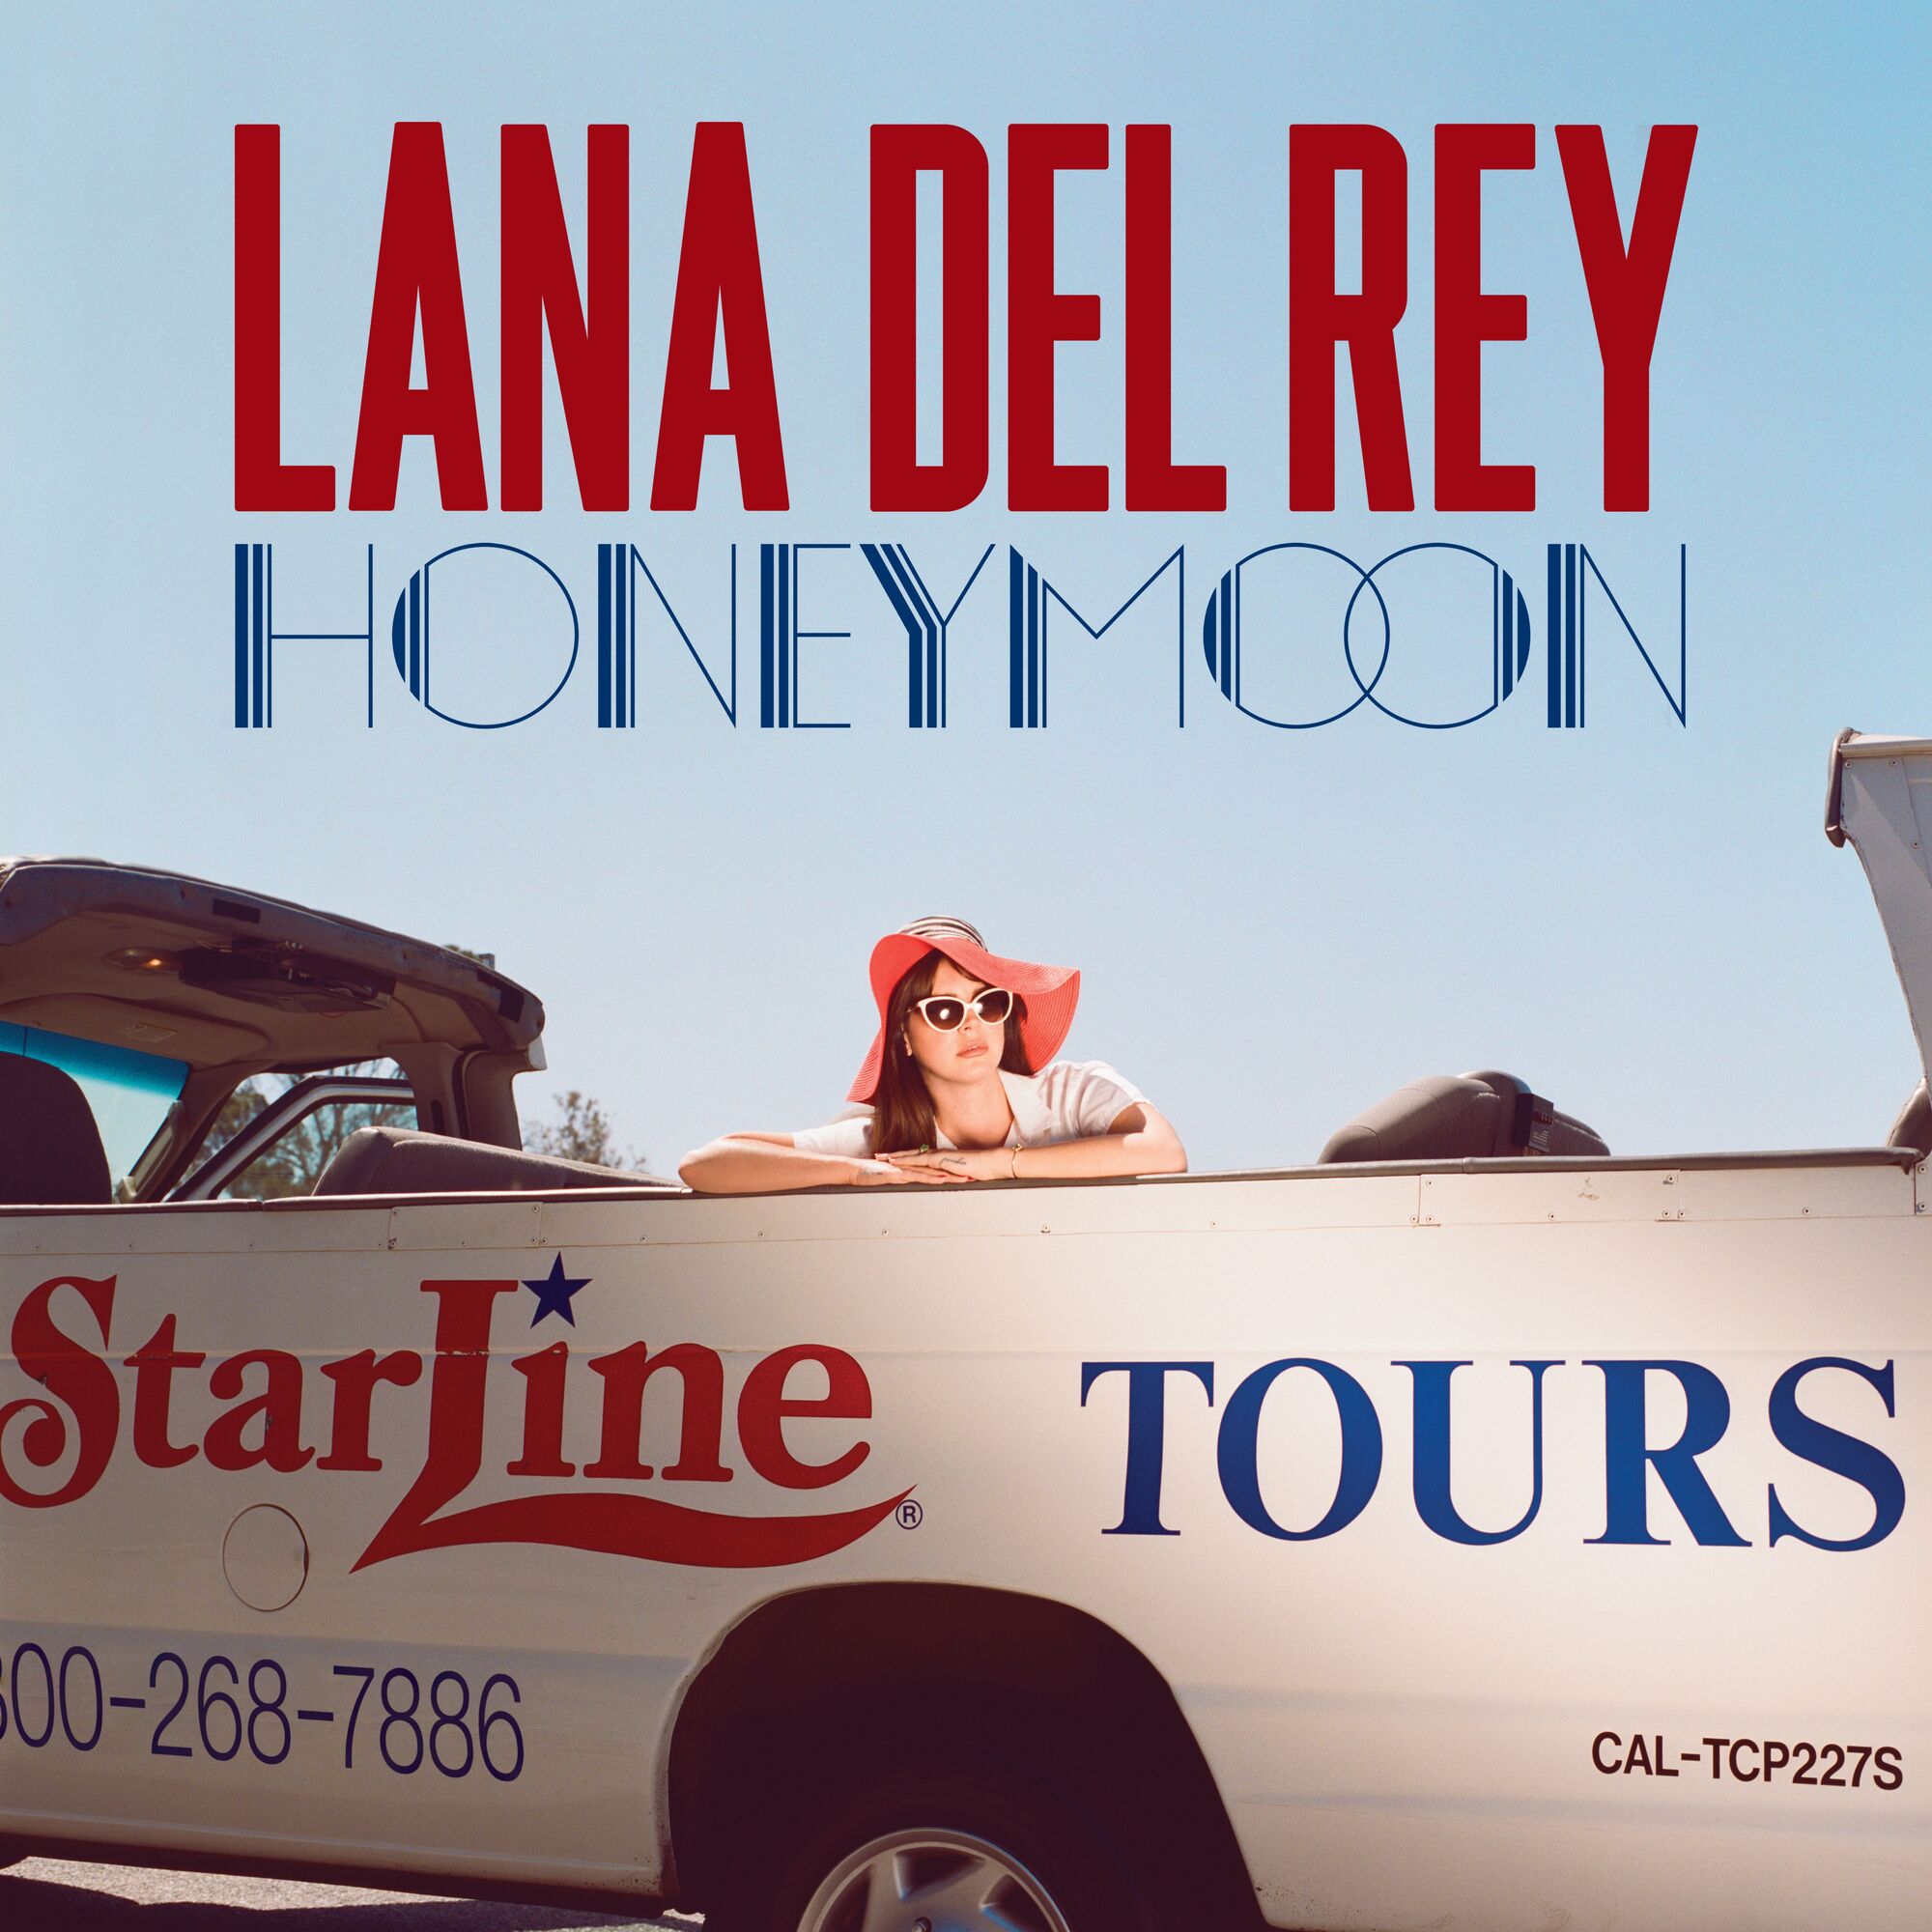 Honeymoon (album). Lana Del Rey